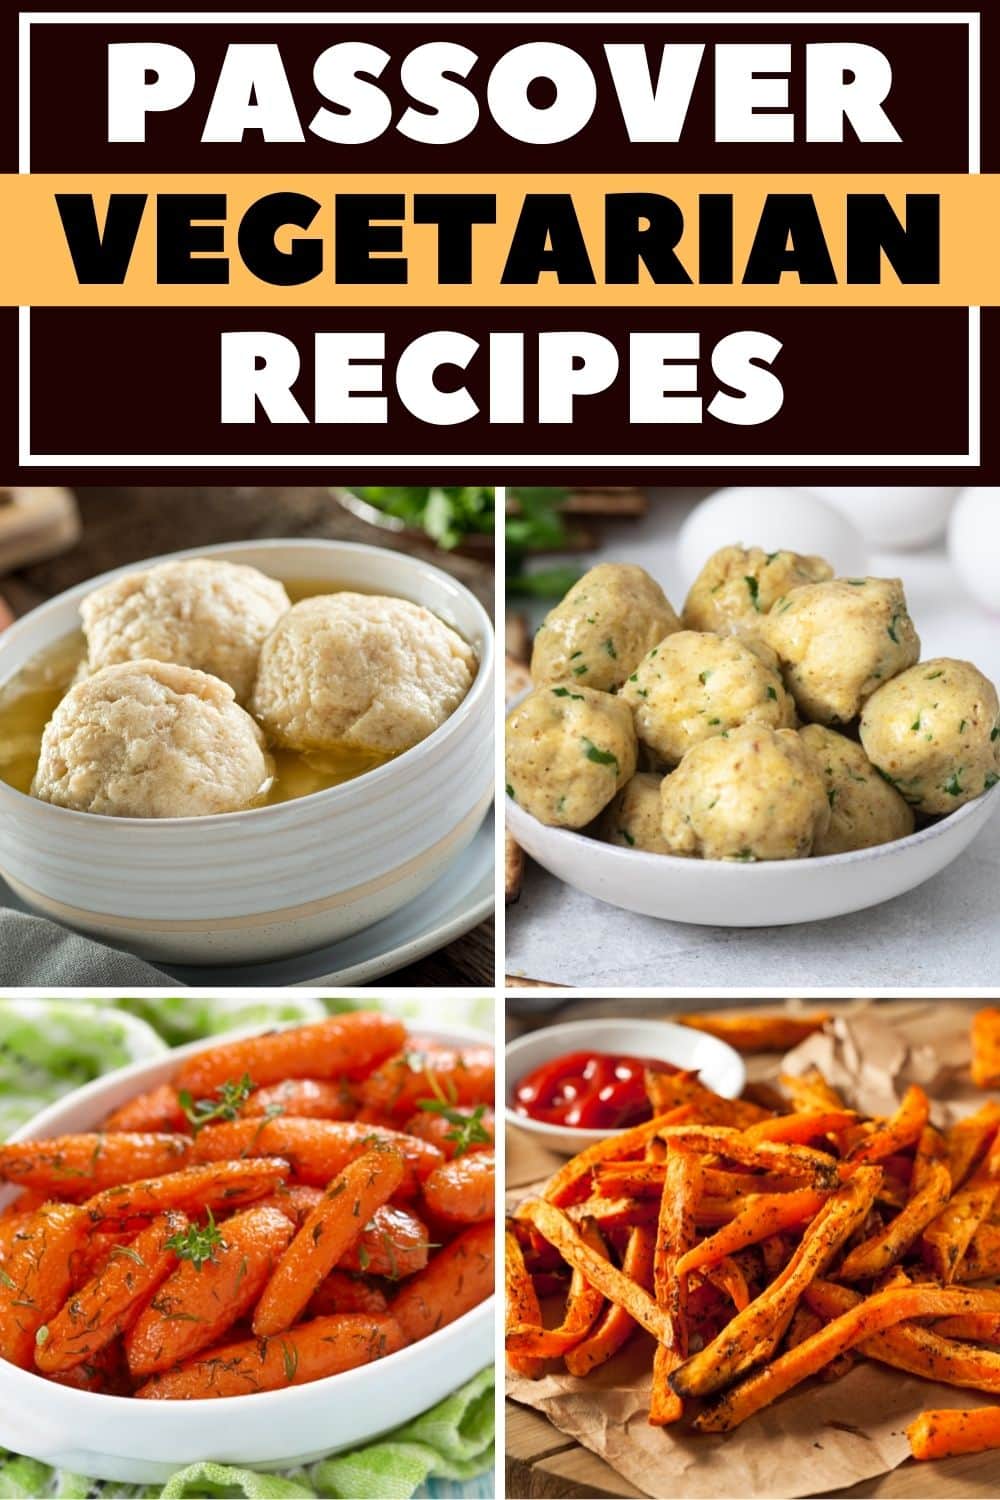 Passover Vegetarian Recipes